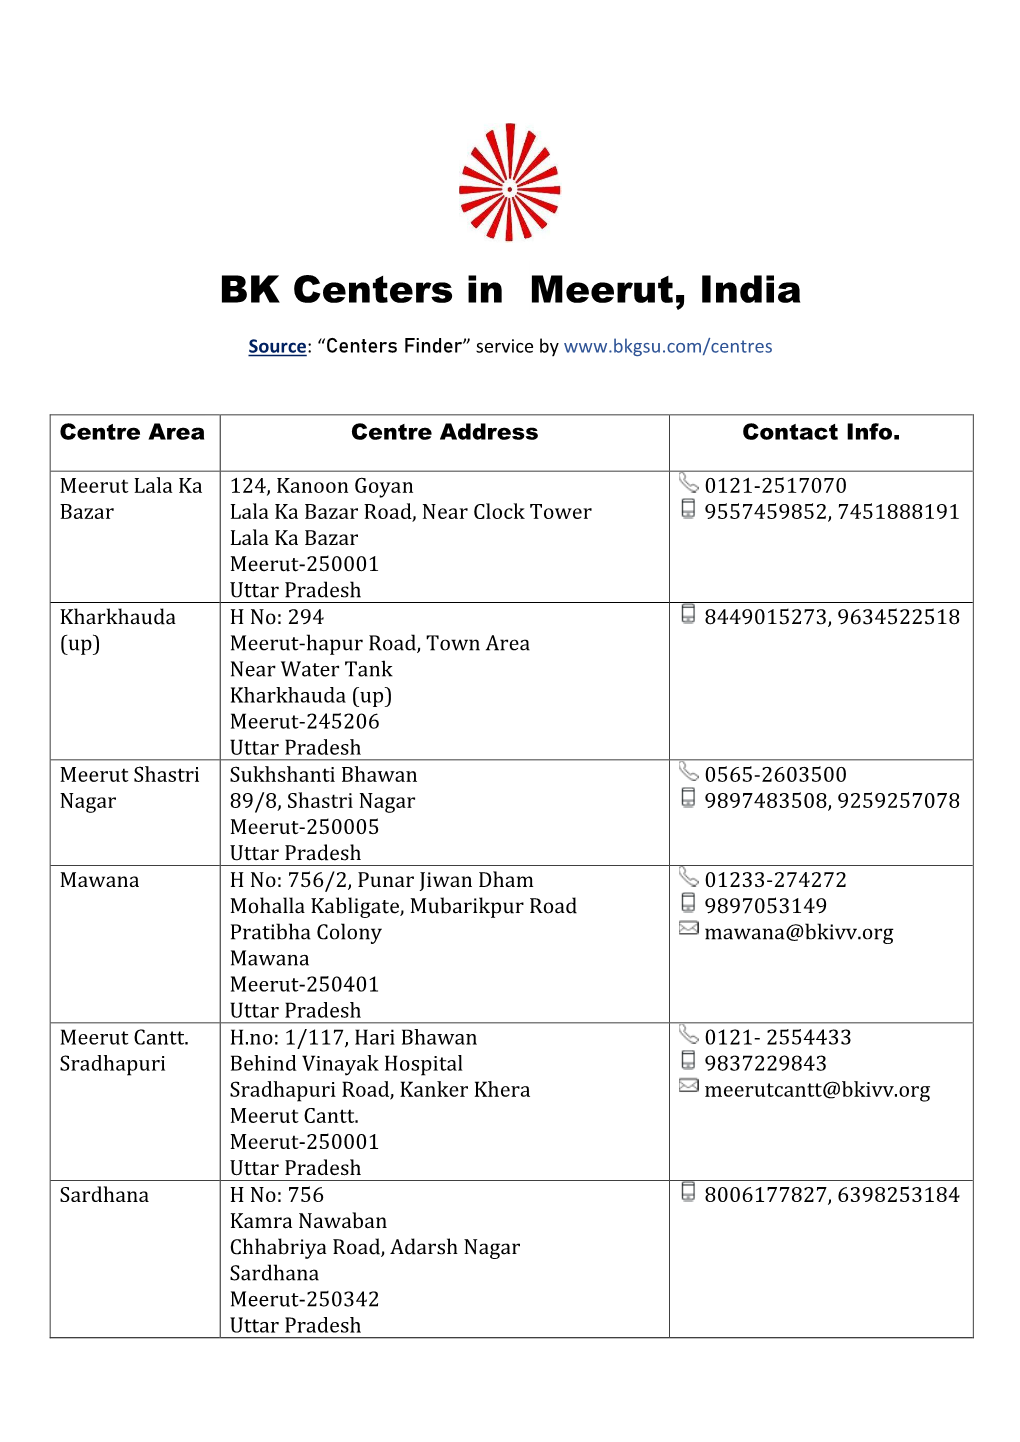 BK Centers in Meerut, India